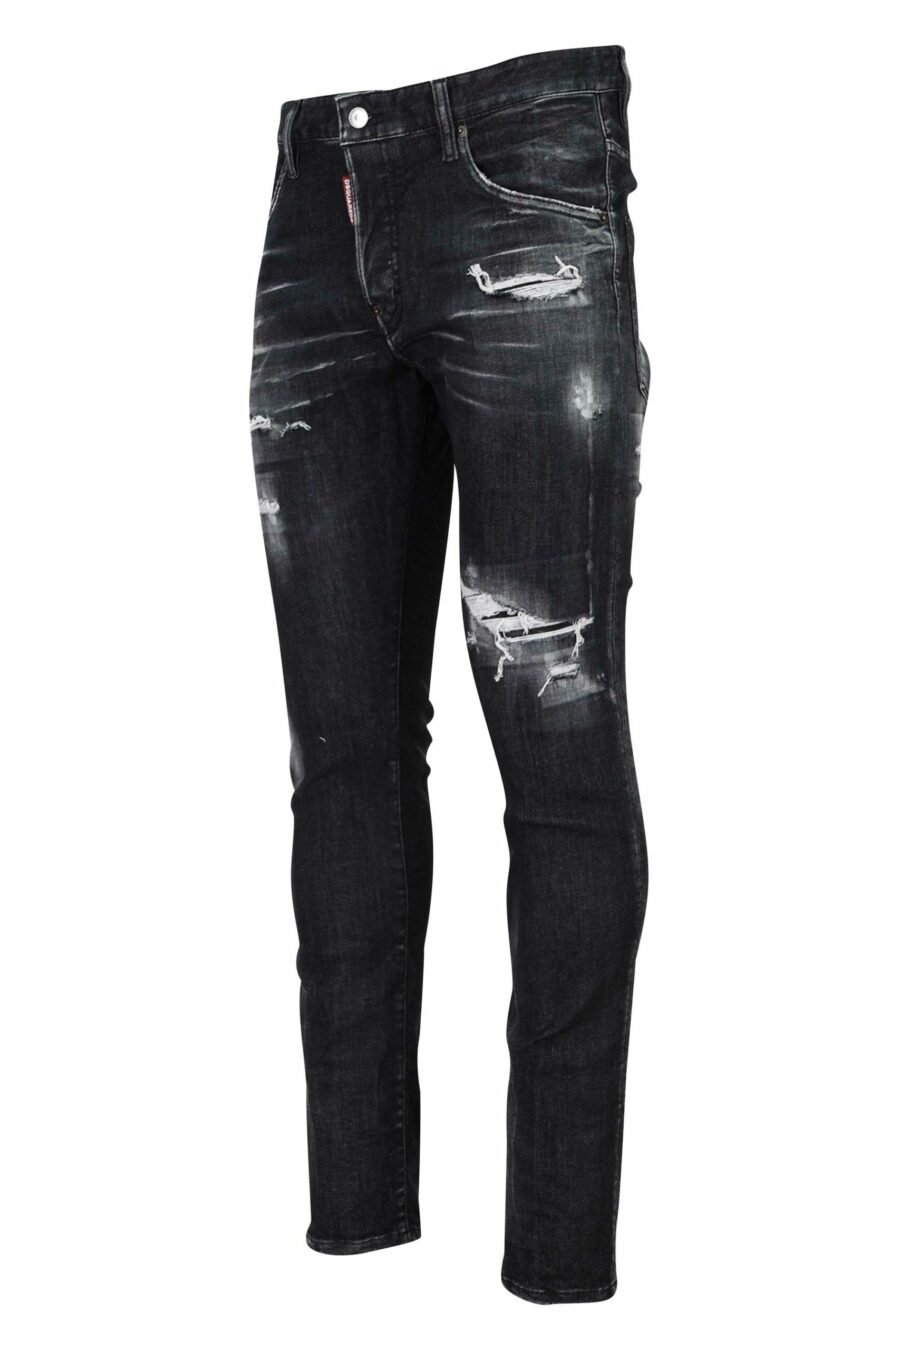 Skater-Jeans-Hose schwarz mit Rissen und semi-getragen - 8054148101411 1 skaliert